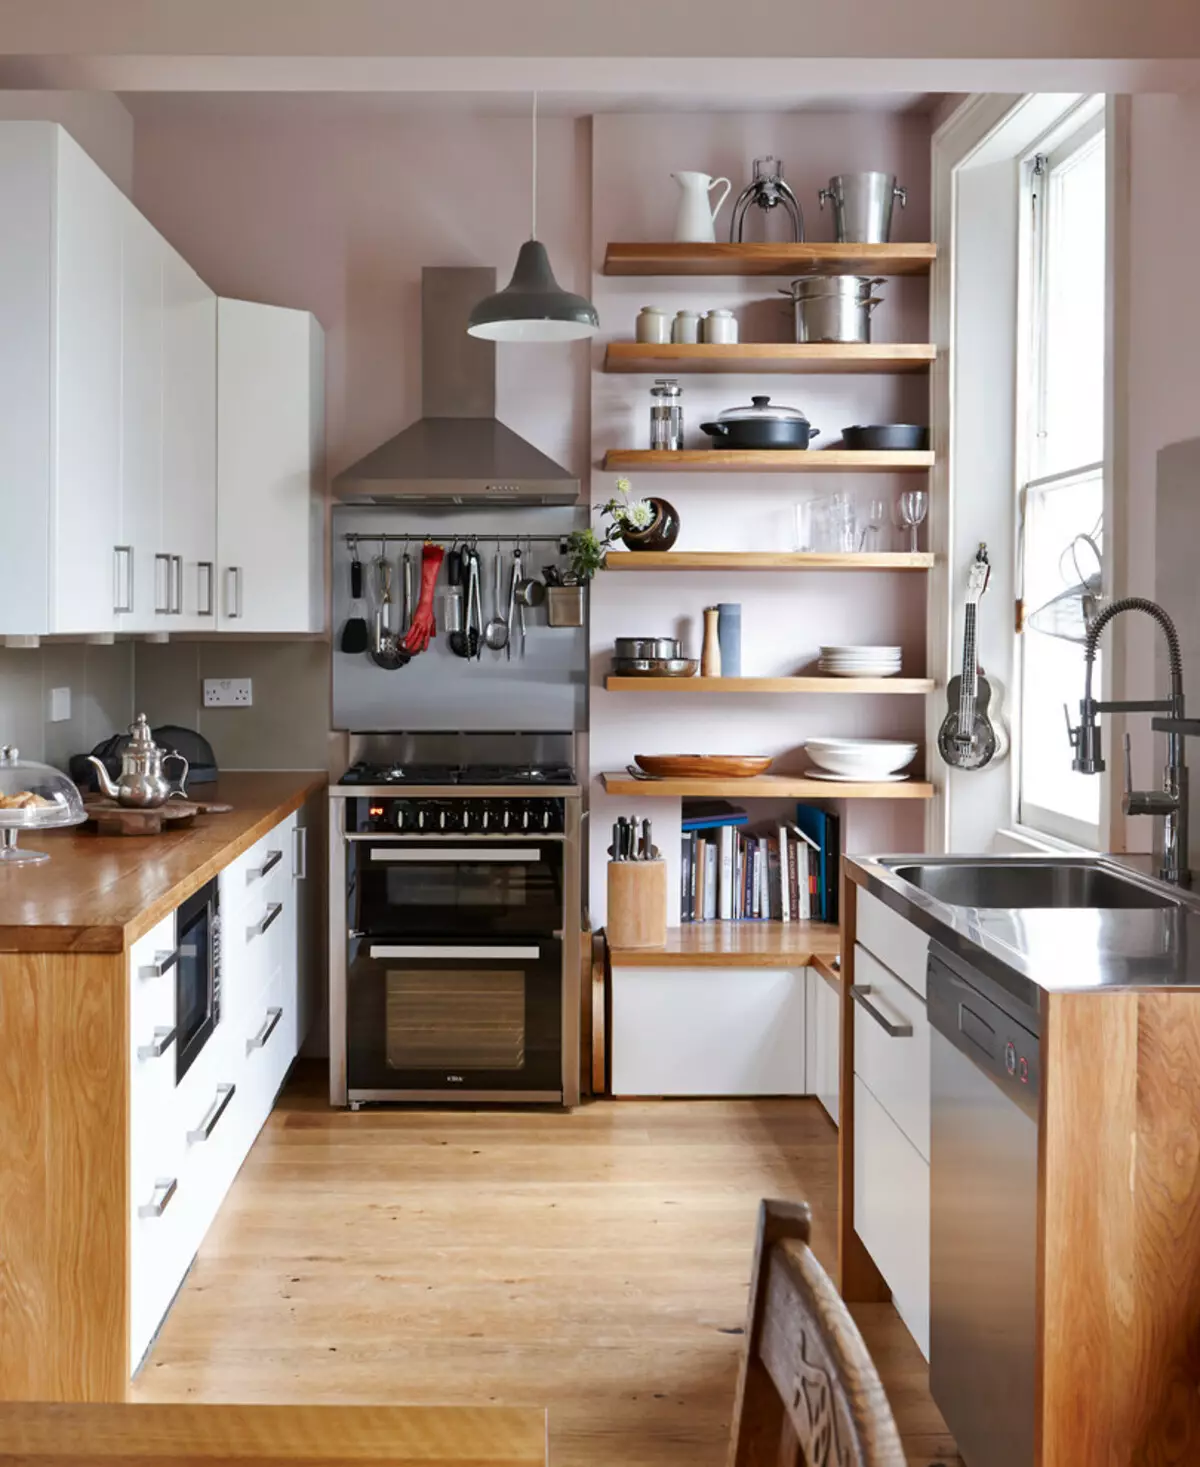 Ինչպես սարքավորել փոքր խոհանոց: 91 Լուսանկարը հետաքրքիր խոհանոցային որոշումներ, փոքր ֆունկցիոնալ խոհանոց ստեղծելու գաղափարներ 9521_23